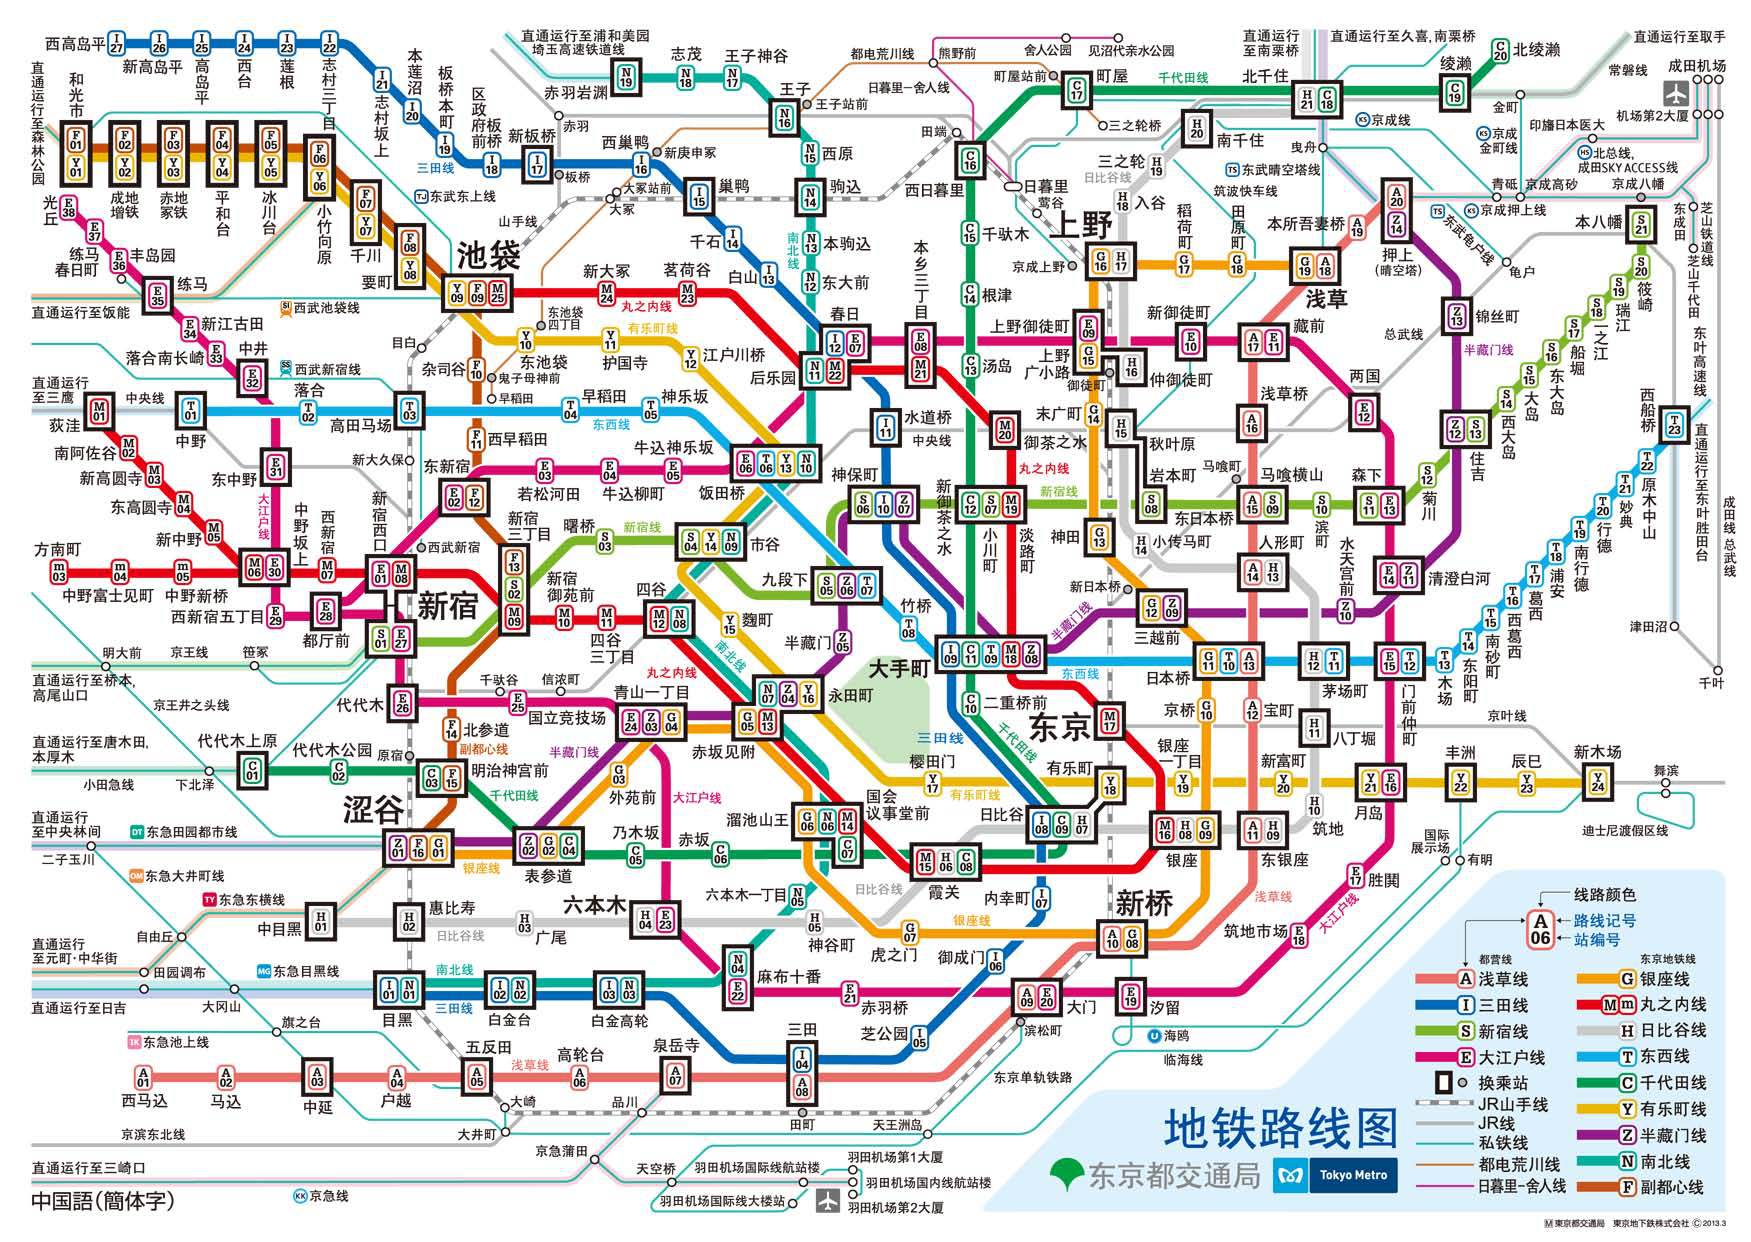 人口密度远超北京:日本东京为何不堵车?